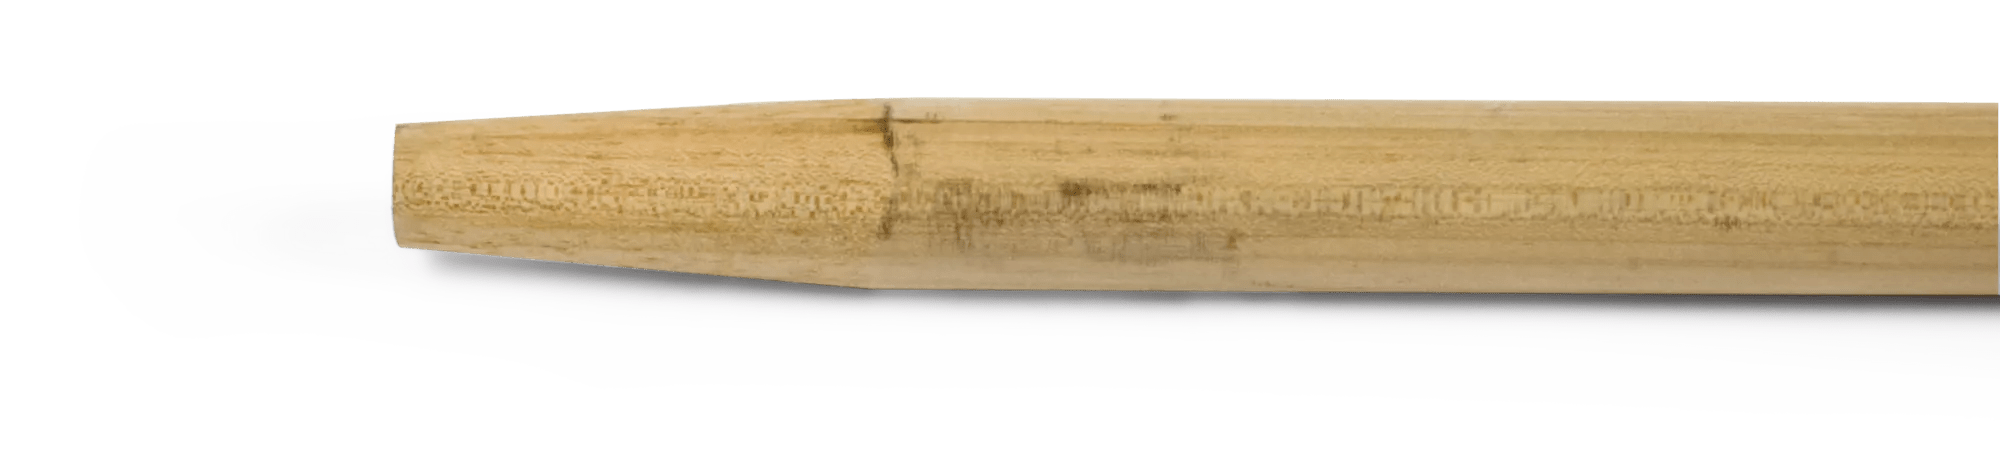 5' Tapered Hard Wood Broom Handle